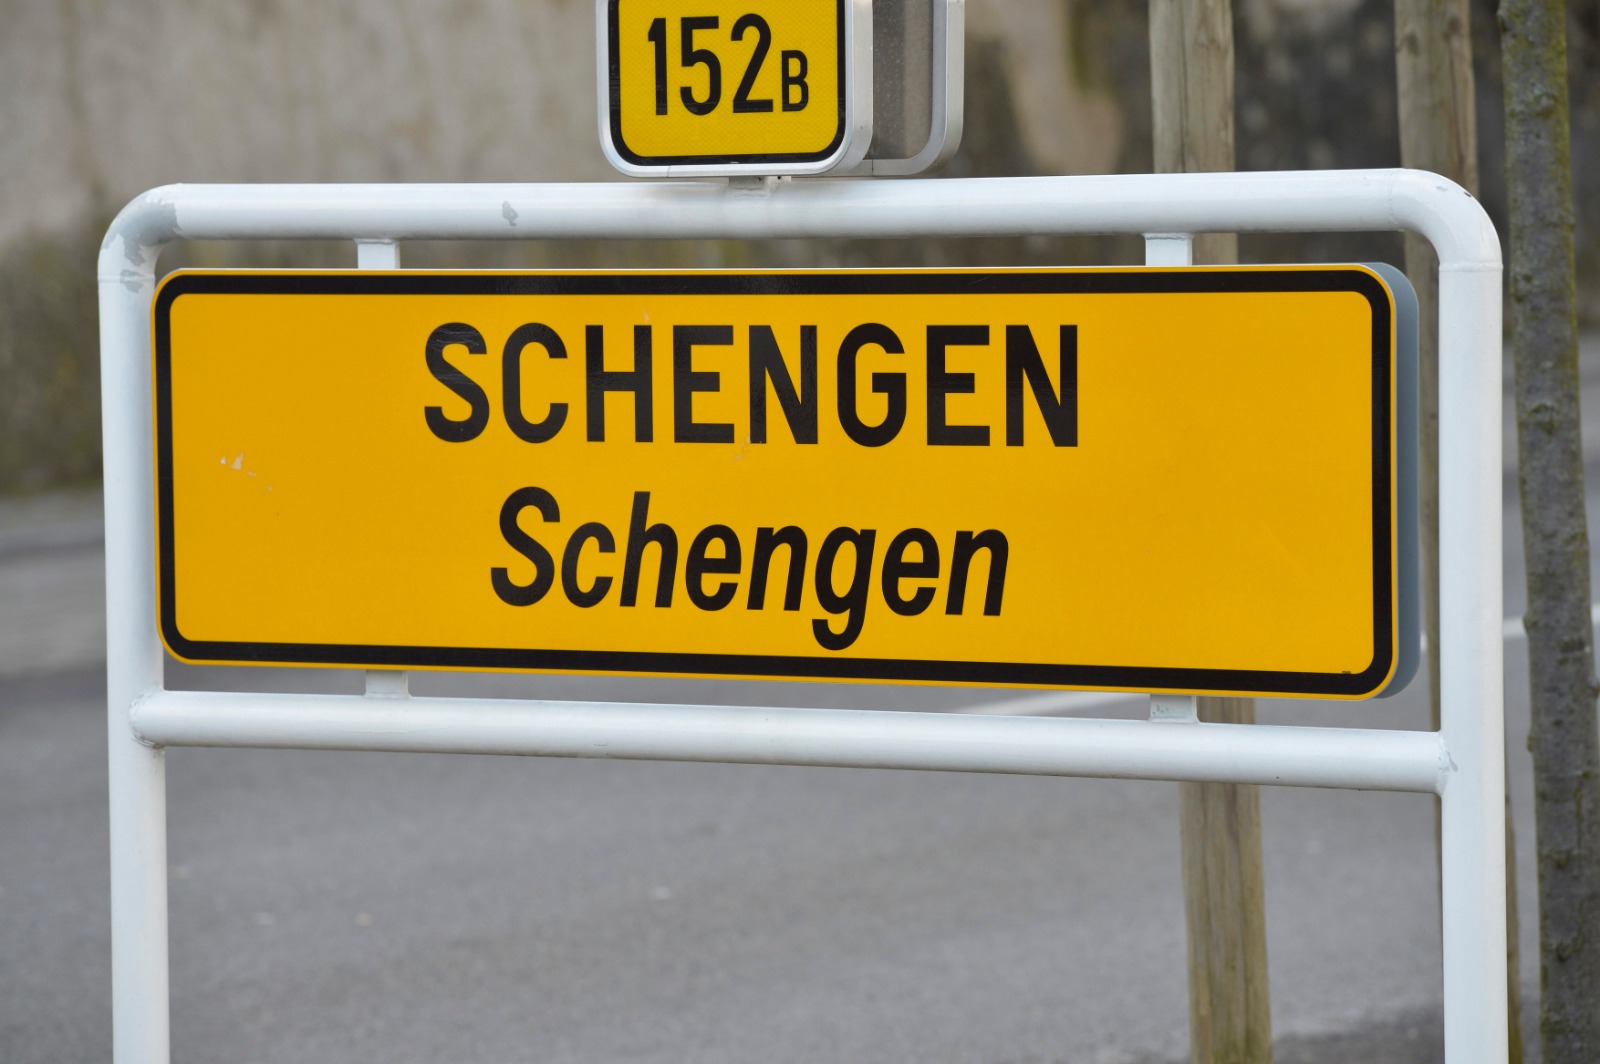 România, acceptată sau nu în Schengen. Observator Antena 1 transmite momentele cruciale. În direct de la Bruxelles pe 8-9 decembrie